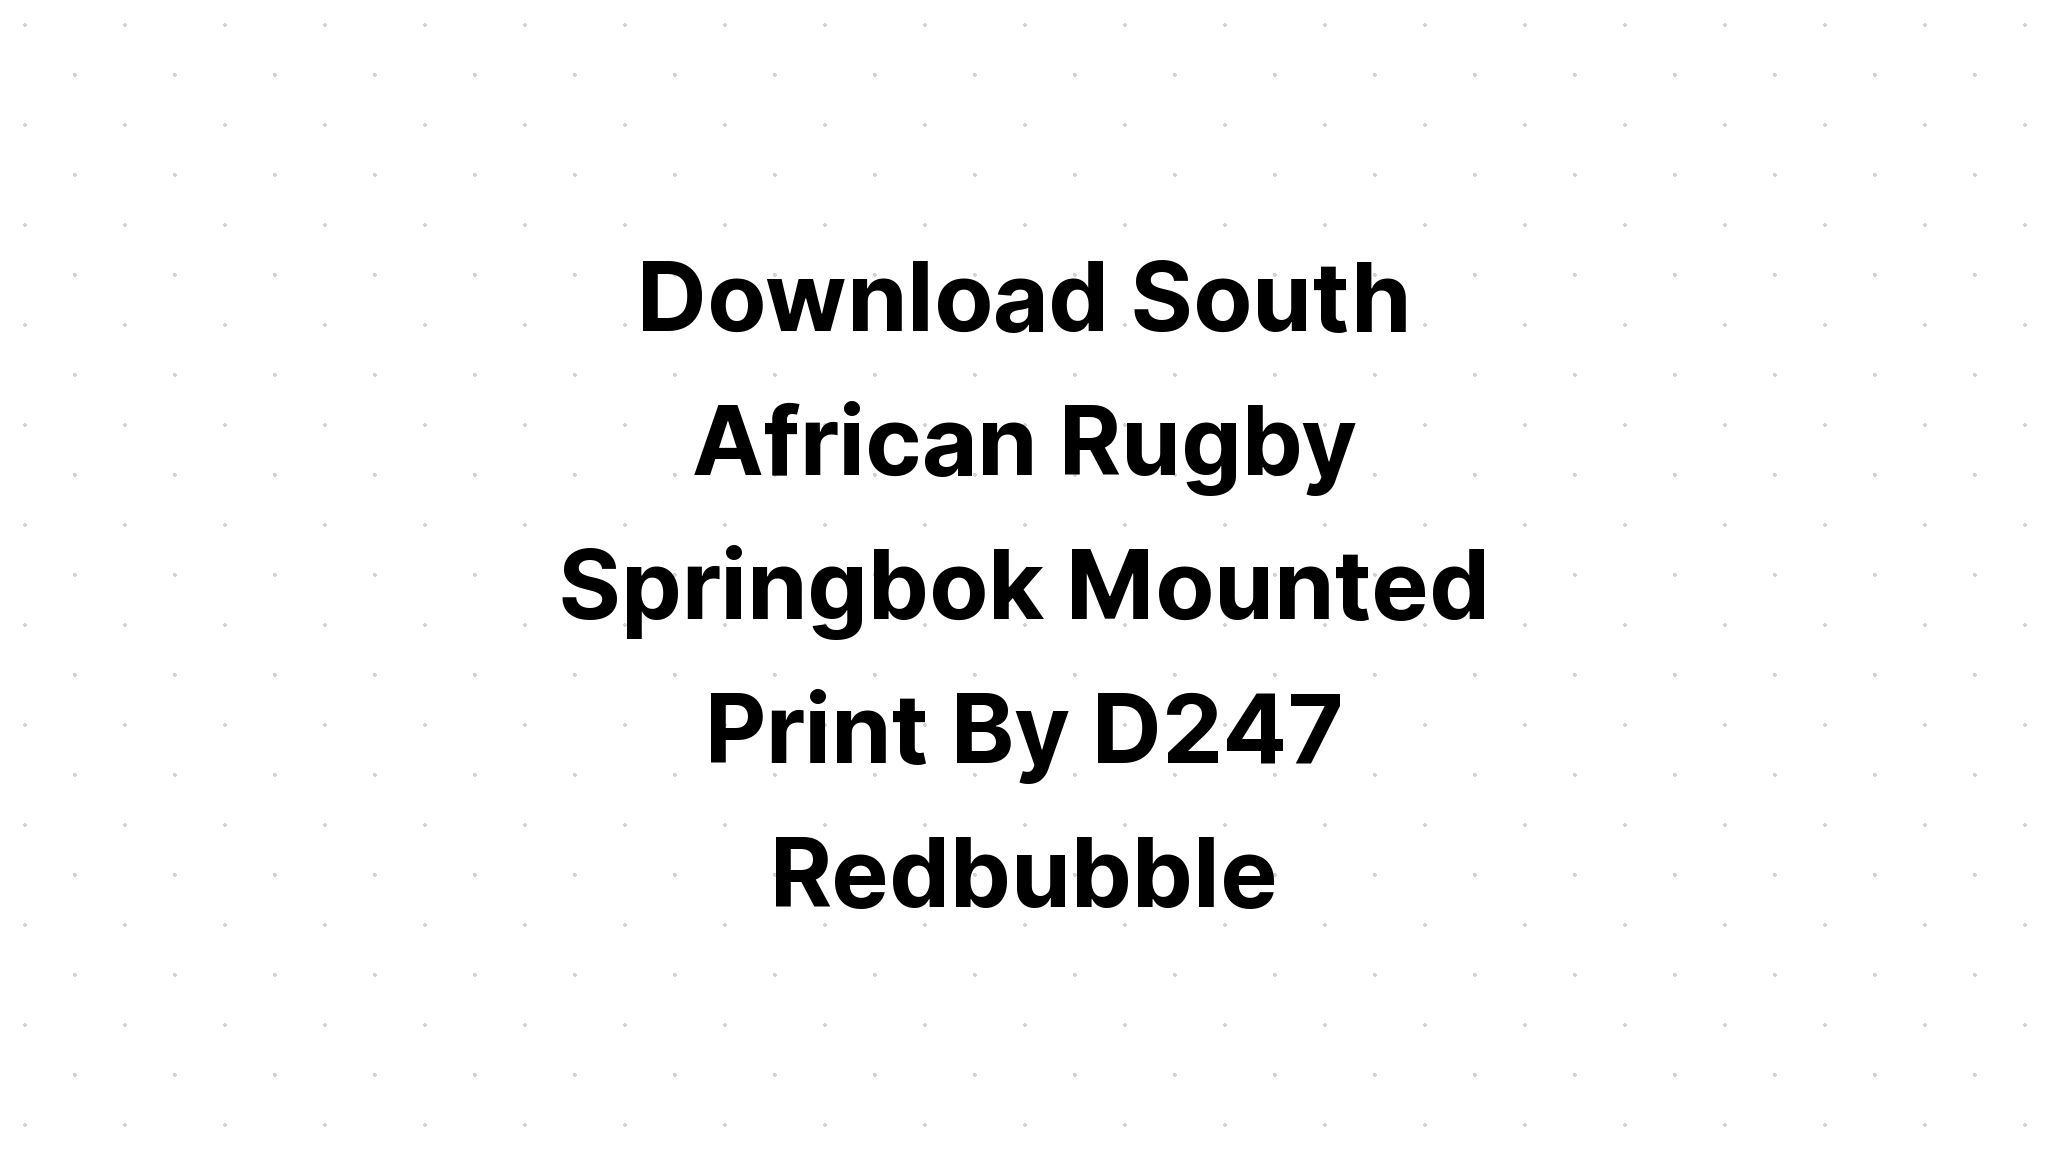 Download Springbok Rugby SVG File